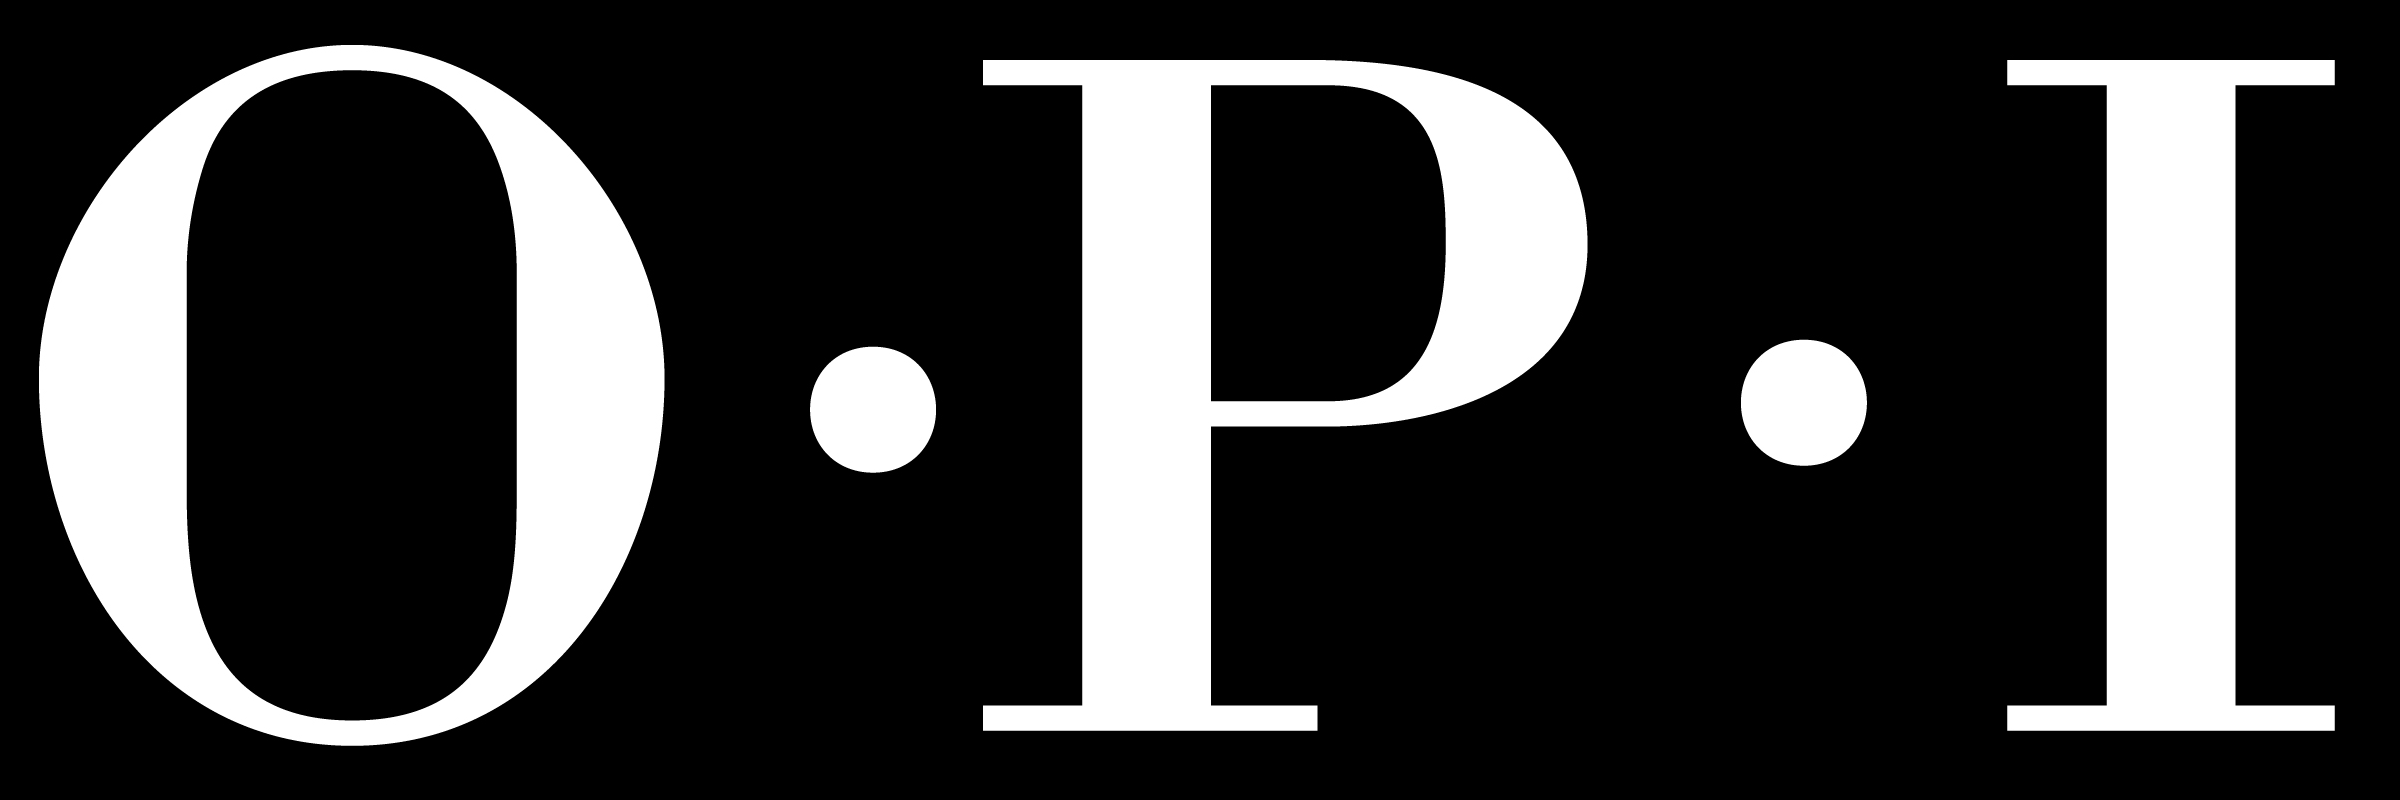 OPI Logo - OPI